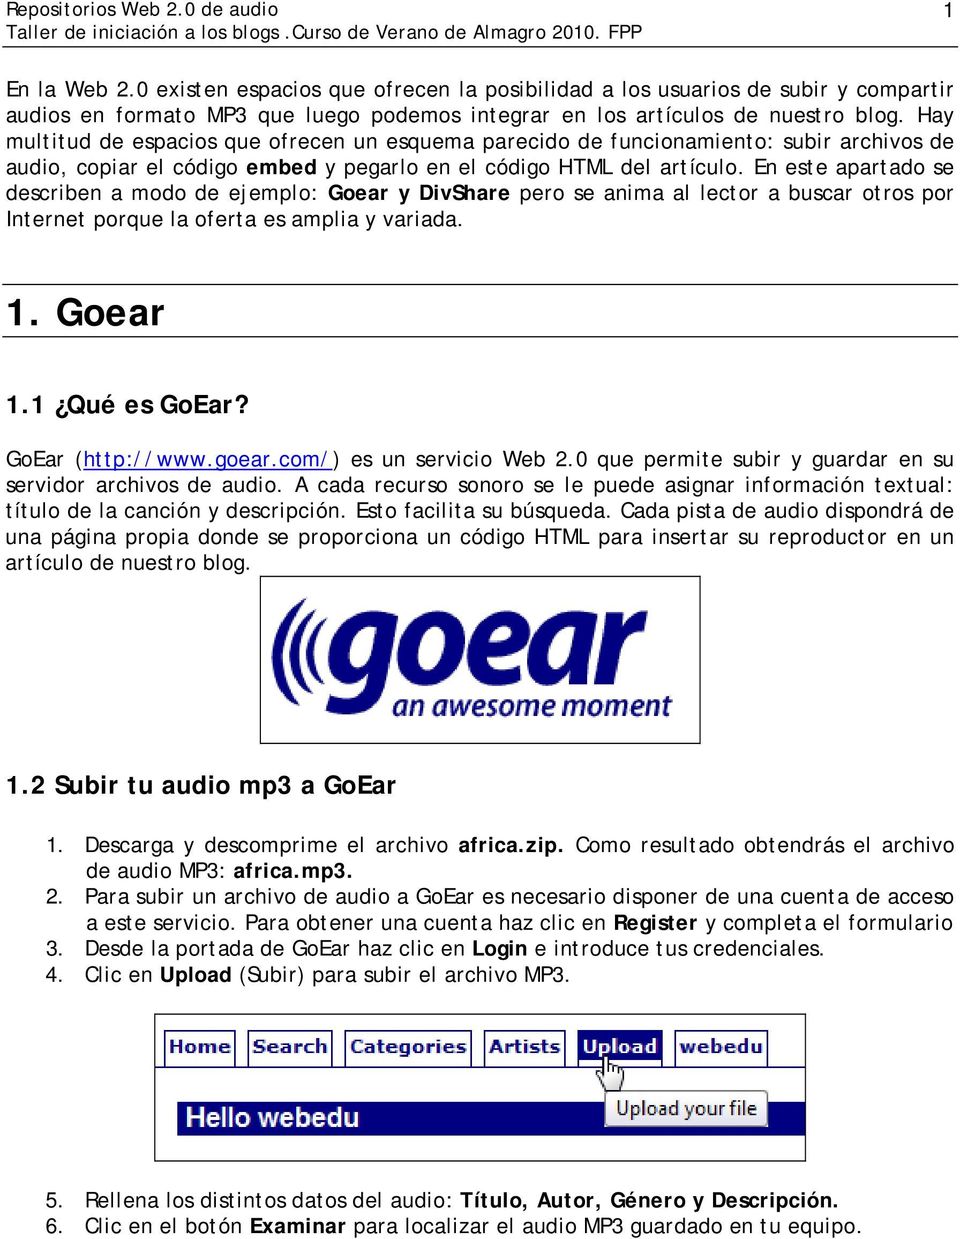 En este apartado se describen a modo de ejemplo: Goear y DivShare pero se anima al lector a buscar otros por Internet porque la oferta es amplia y variada. 1. Goear 1.1 Qué es GoEar?